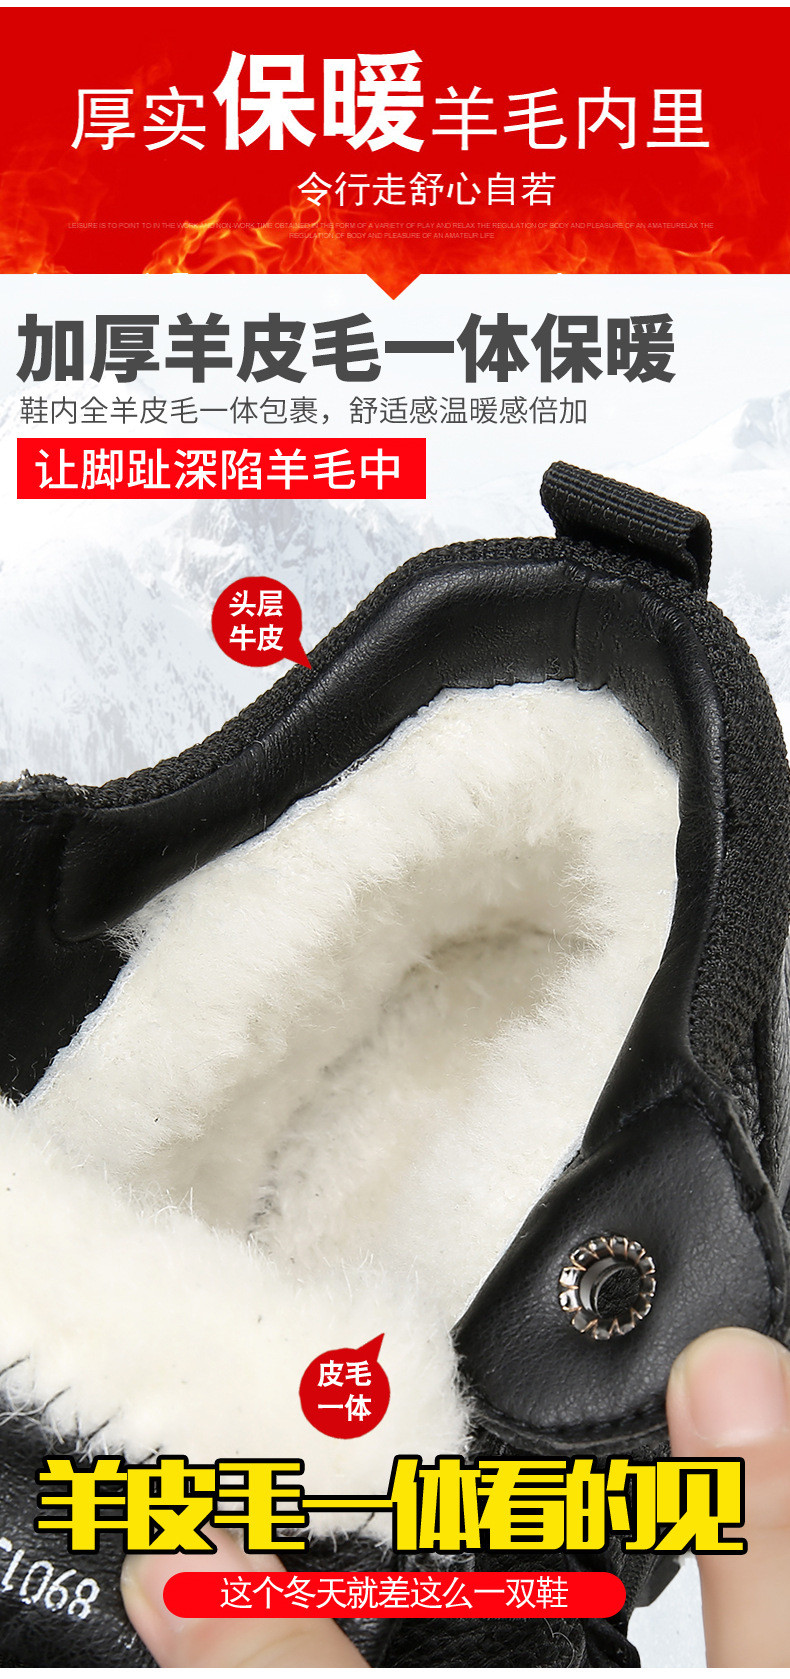 启言 冬季棉鞋头层牛皮高帮加厚羊毛舒适保暖男士休闲鞋雪地靴爸爸鞋